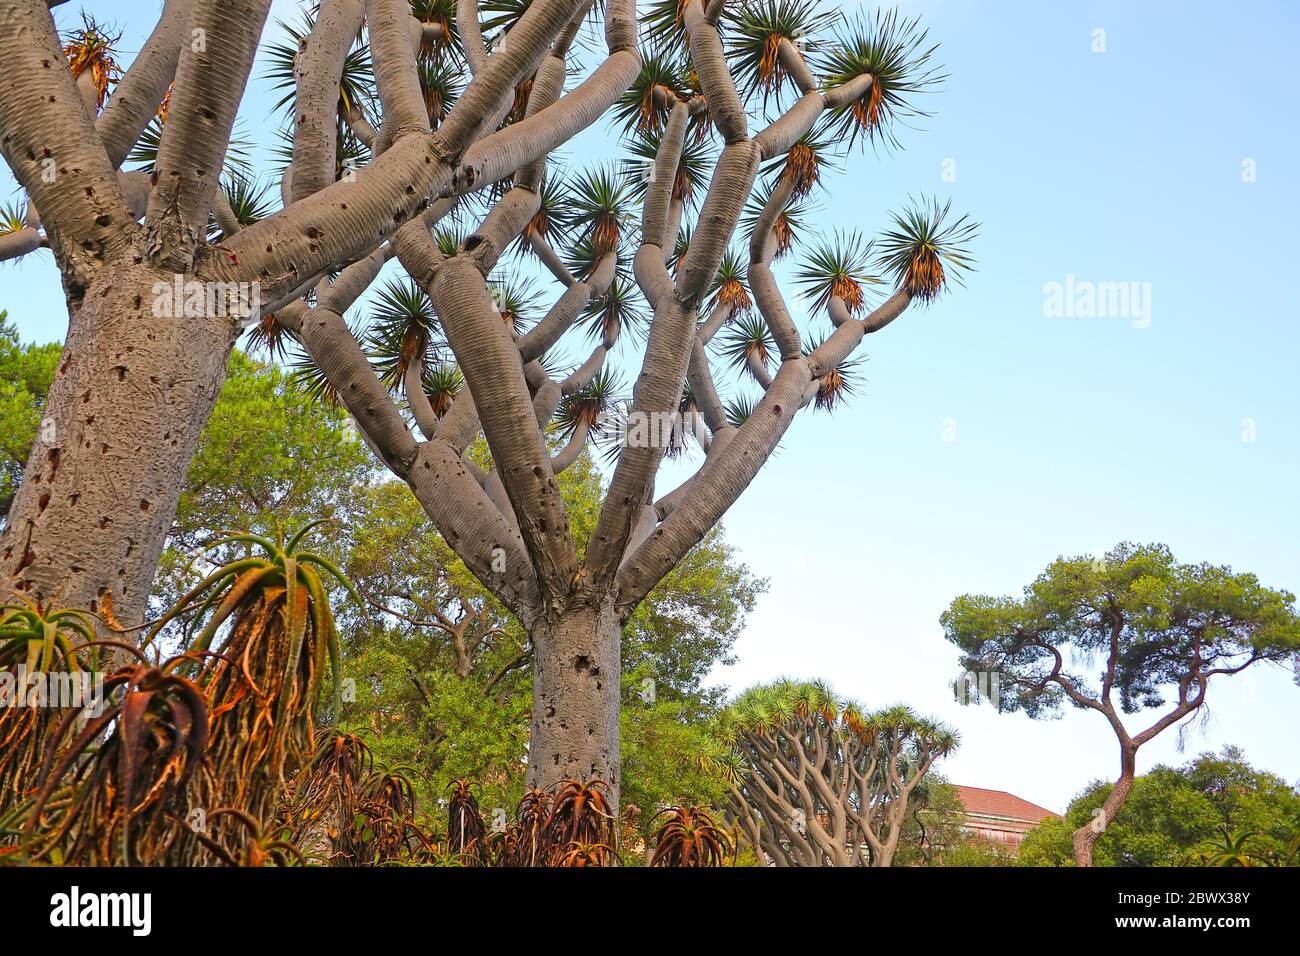 Kanarische Inseln Dragon Tree im Inneren der La Alameda Gardens, die ein botanischer Garten in Gibraltar, britisches Überseegebiet sind. Stockfoto